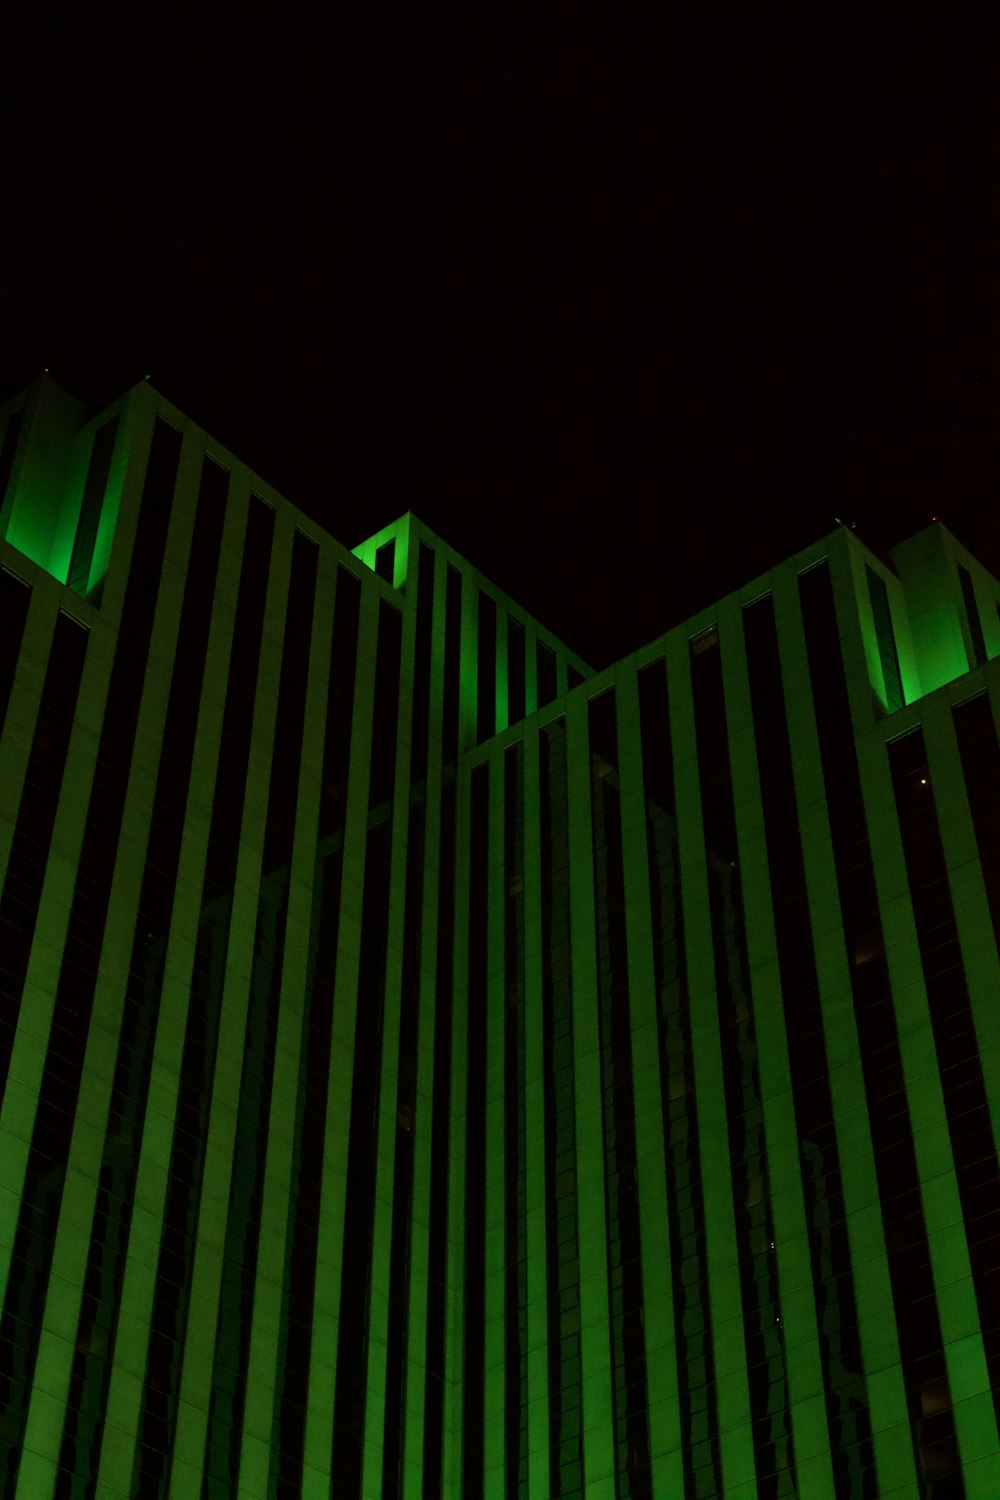 측면에 녹색 표시등이 있는 고층 건물